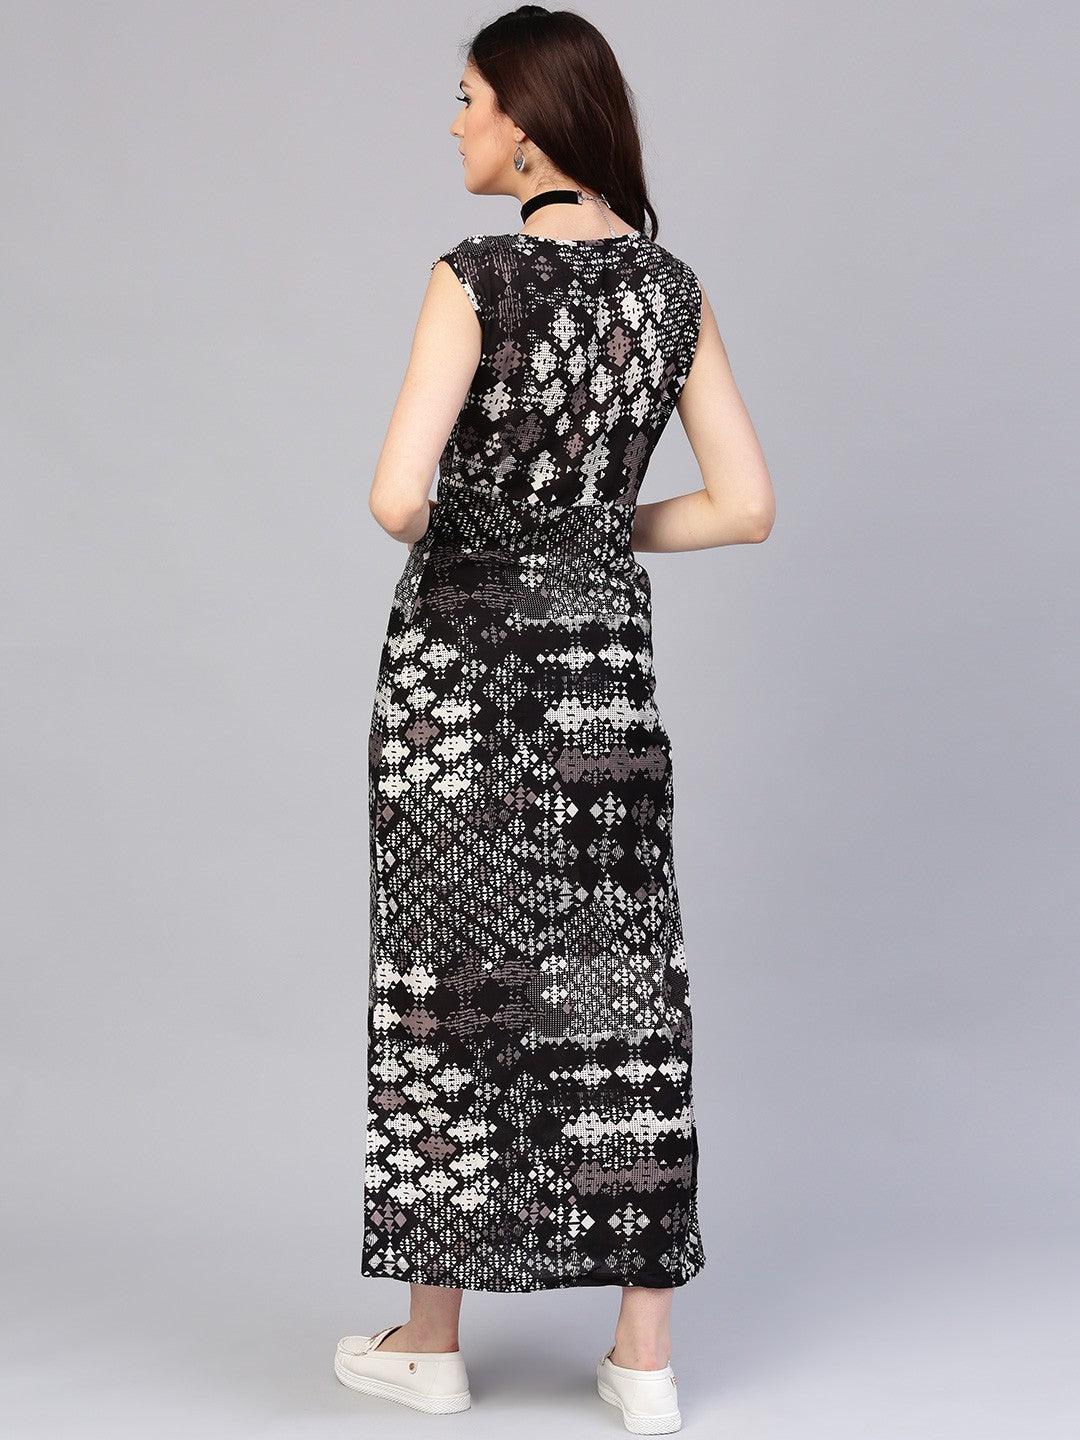 Black Geometrical Printed Sleeveless Maxi Dress (Fully Stitched) - Znxclothing